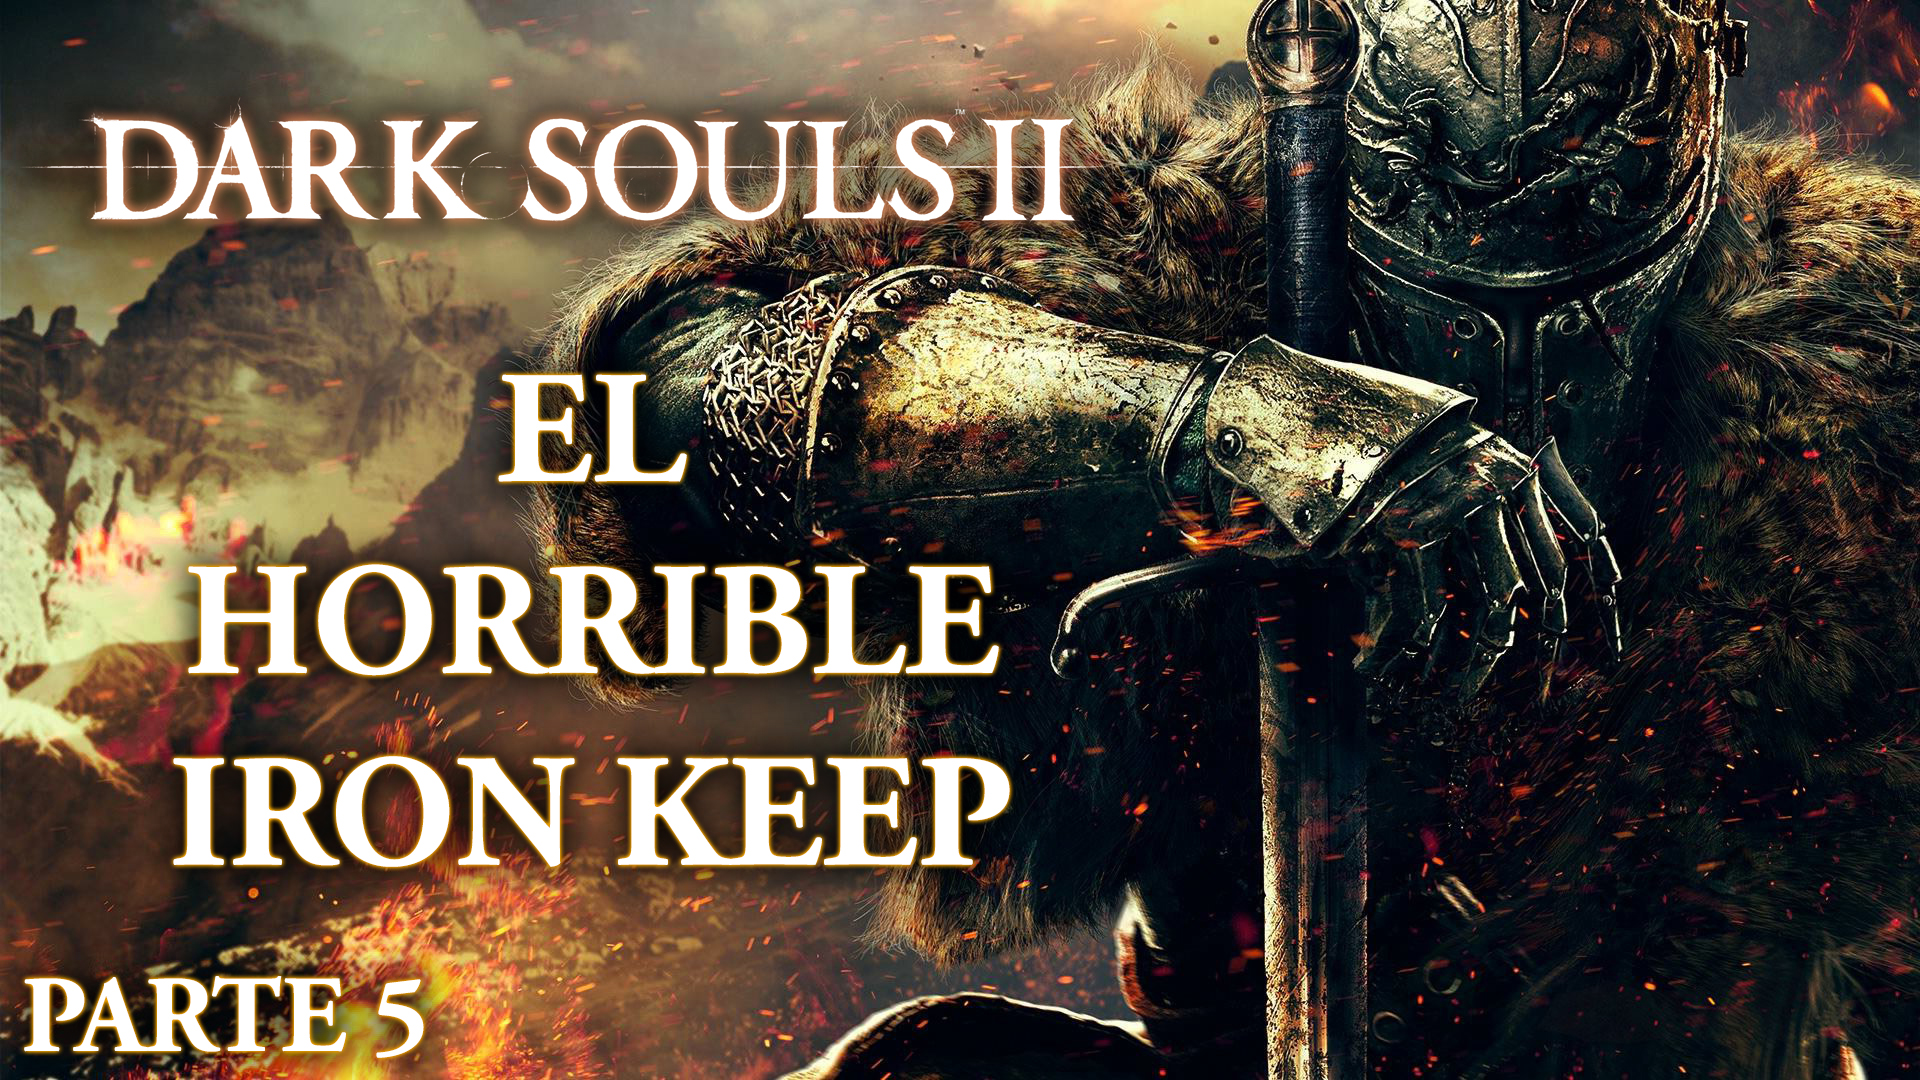 Serie Dark Souls II Parte 5: El horrible Iron Keep